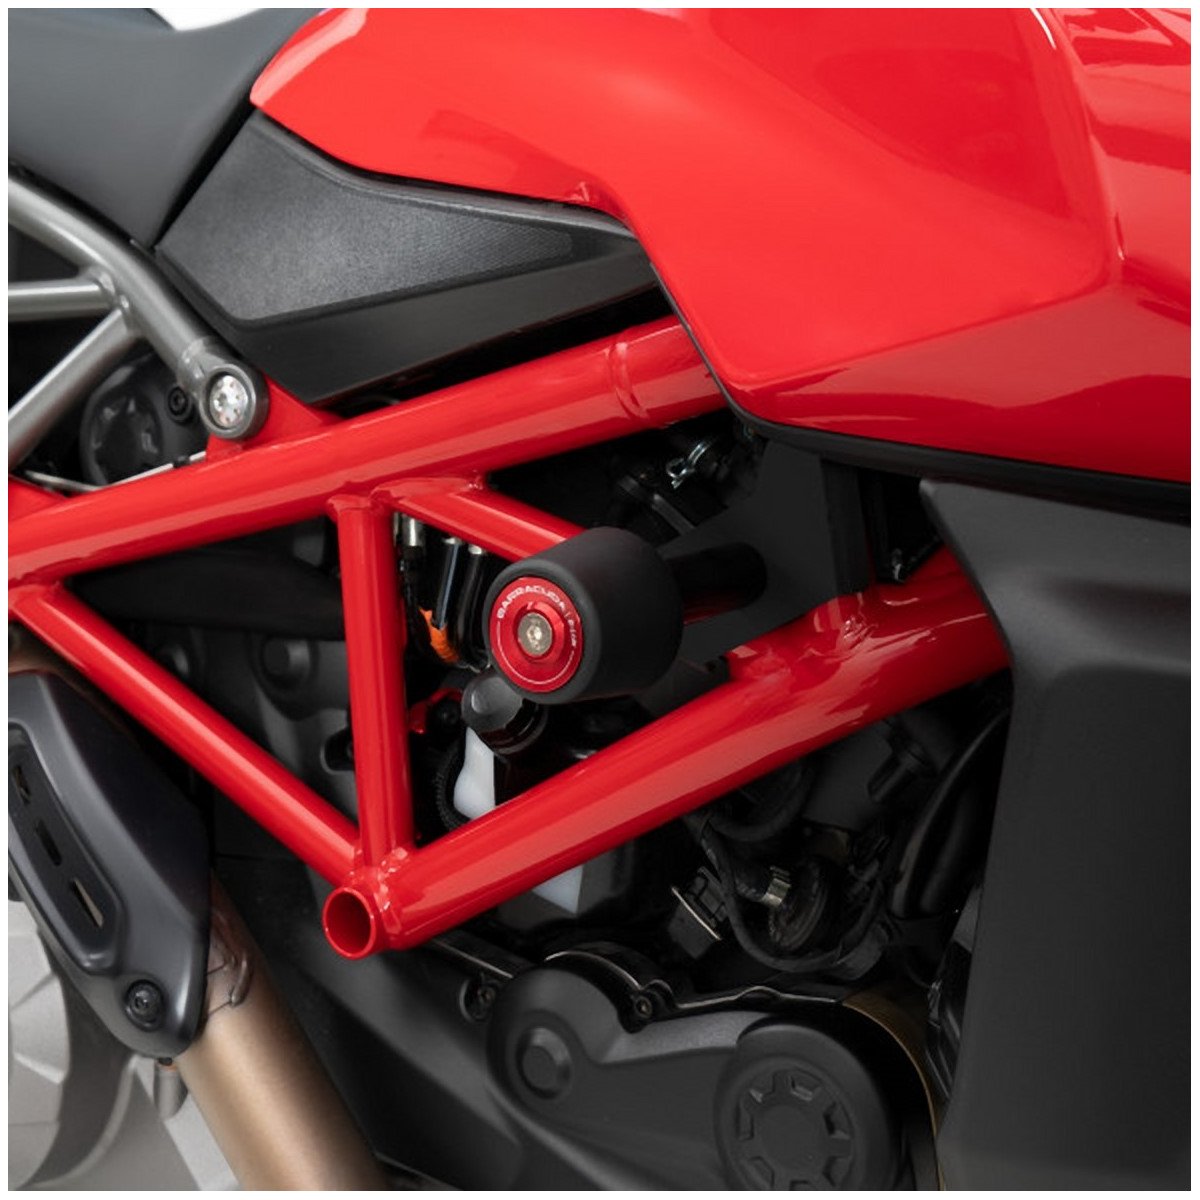 Kit Tamponi Paratelaio/Paramotore Moto Ducati Hypermotard 950 2019